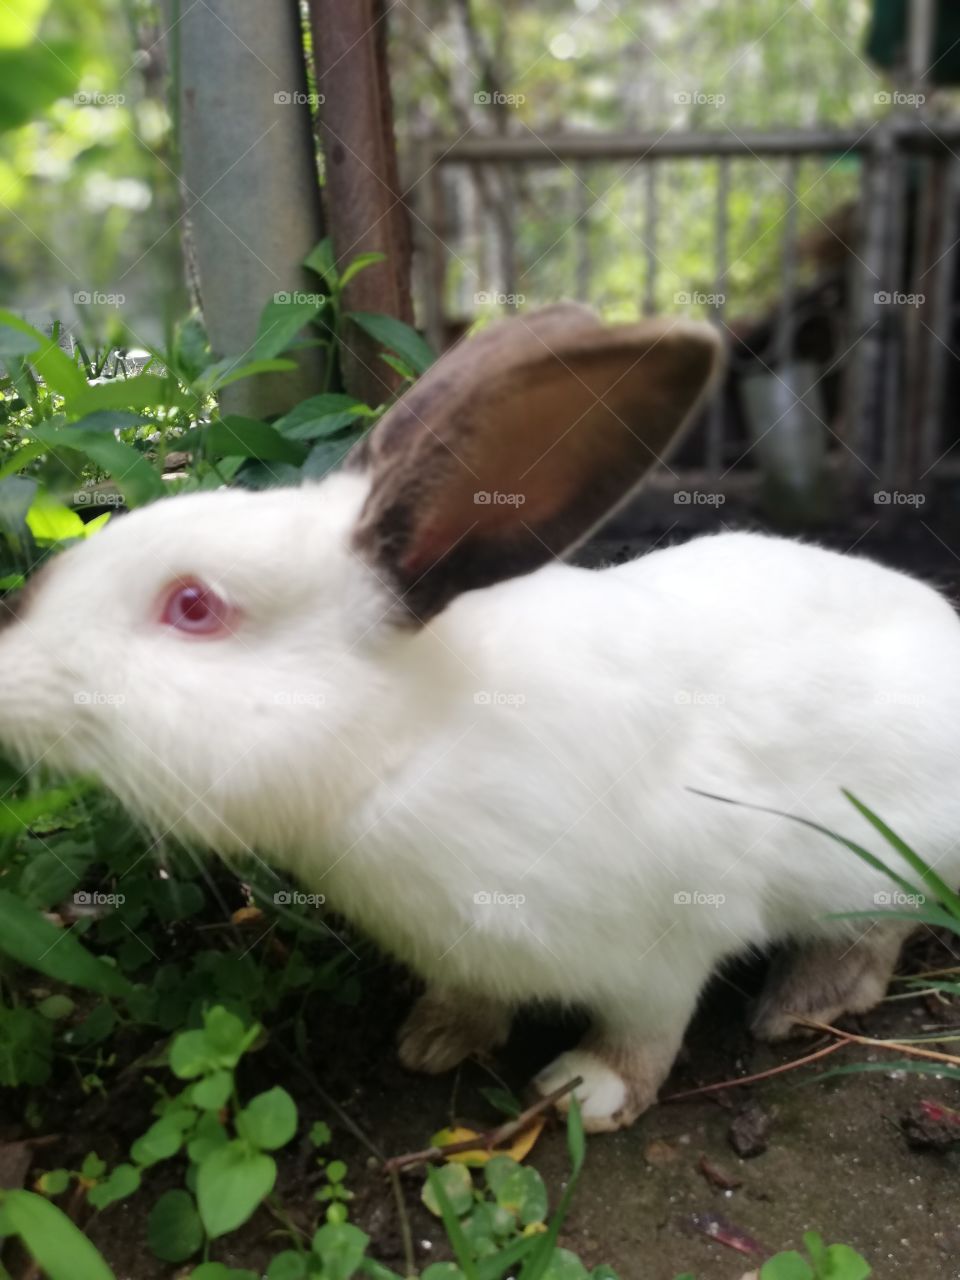 Conejo blanco, conejo macho adulto animal hermoso que es una mascota ideal. Conejo de un año de edad.